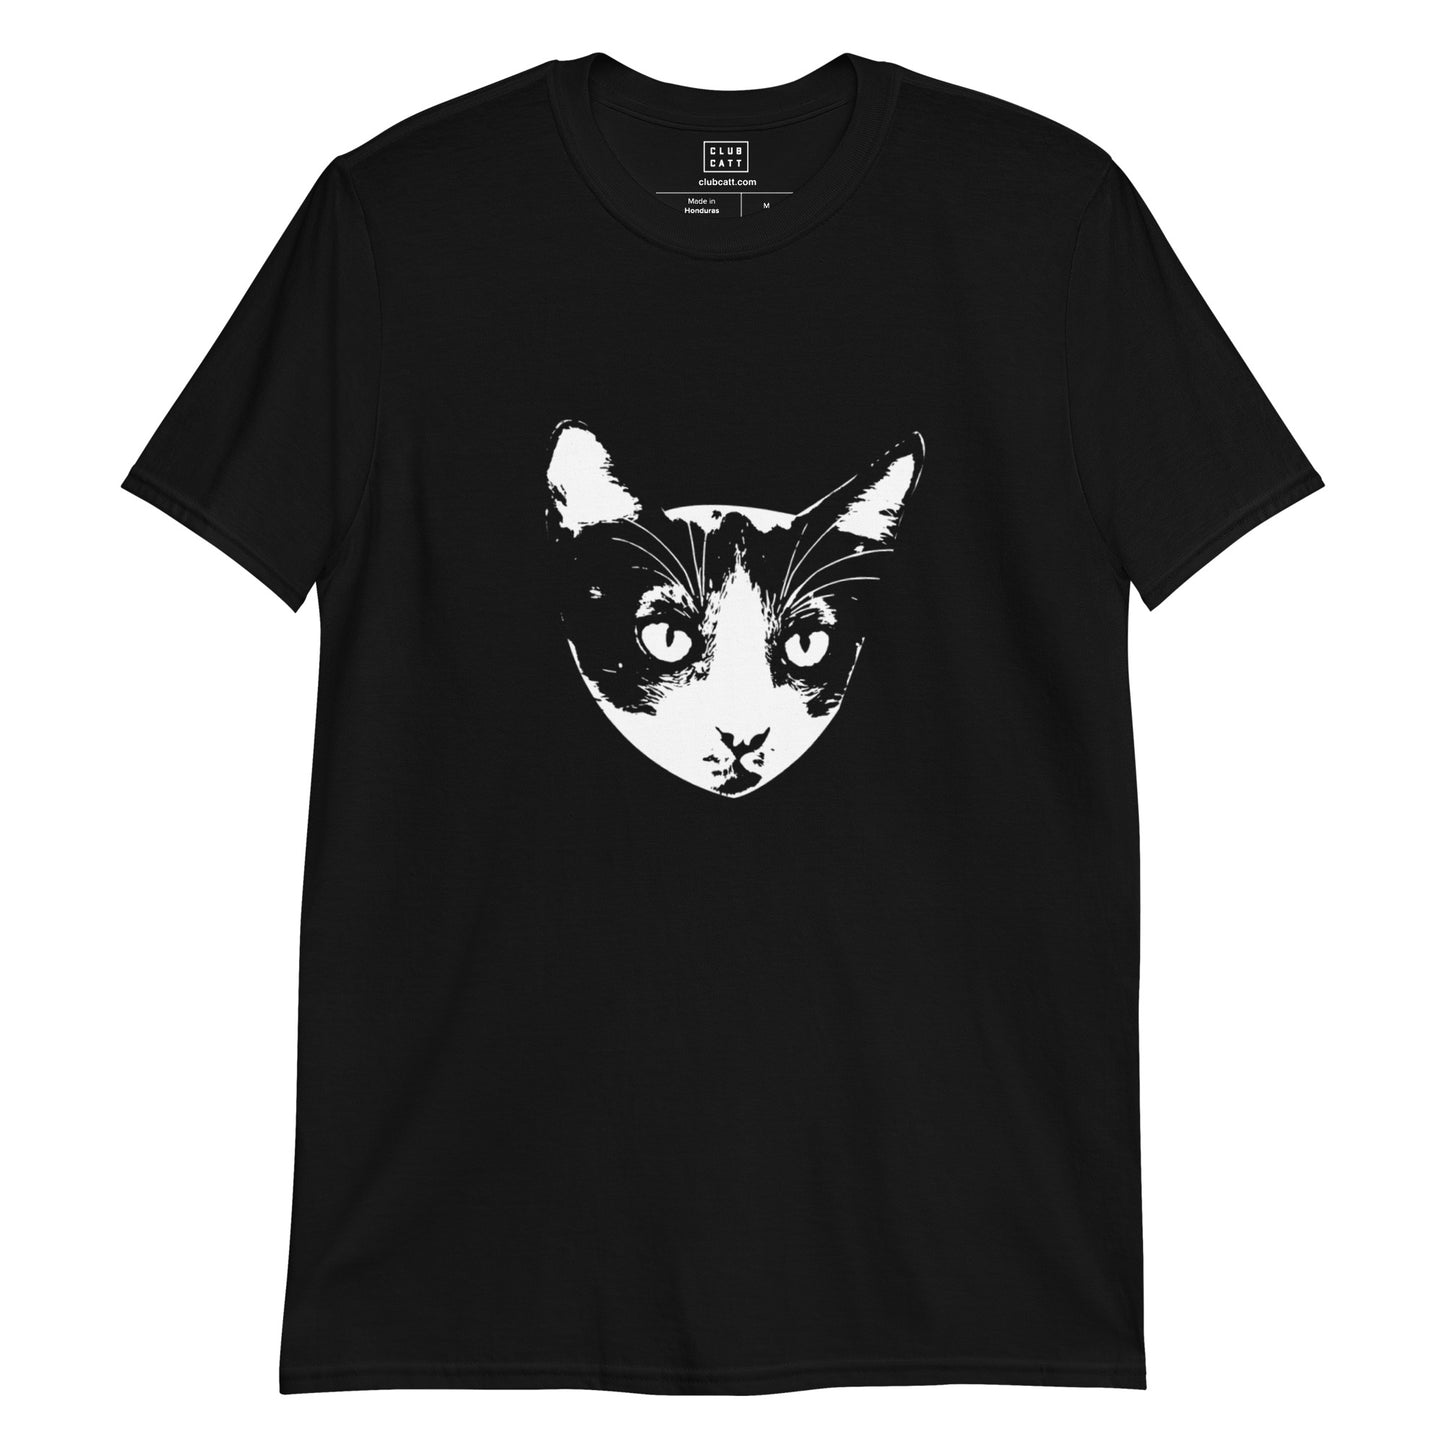 HIDALGO Cat on T-Shirt